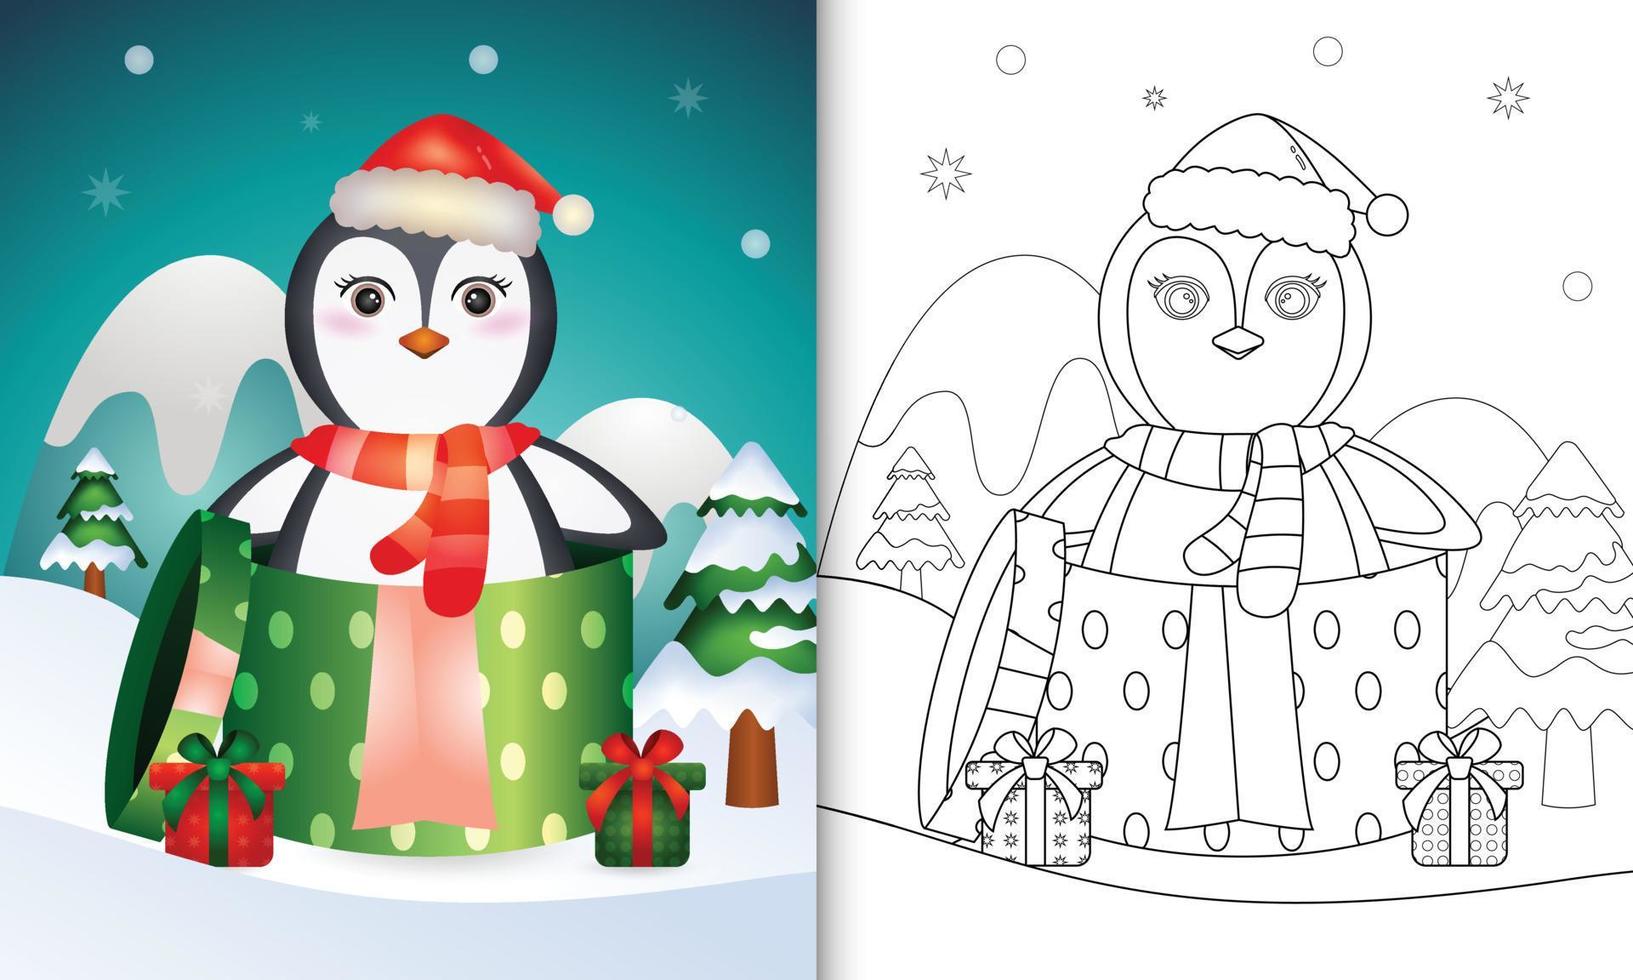 livro de colorir com personagens de natal de pinguim fofo usando chapéu de papai noel e cachecol na caixa de presente vetor